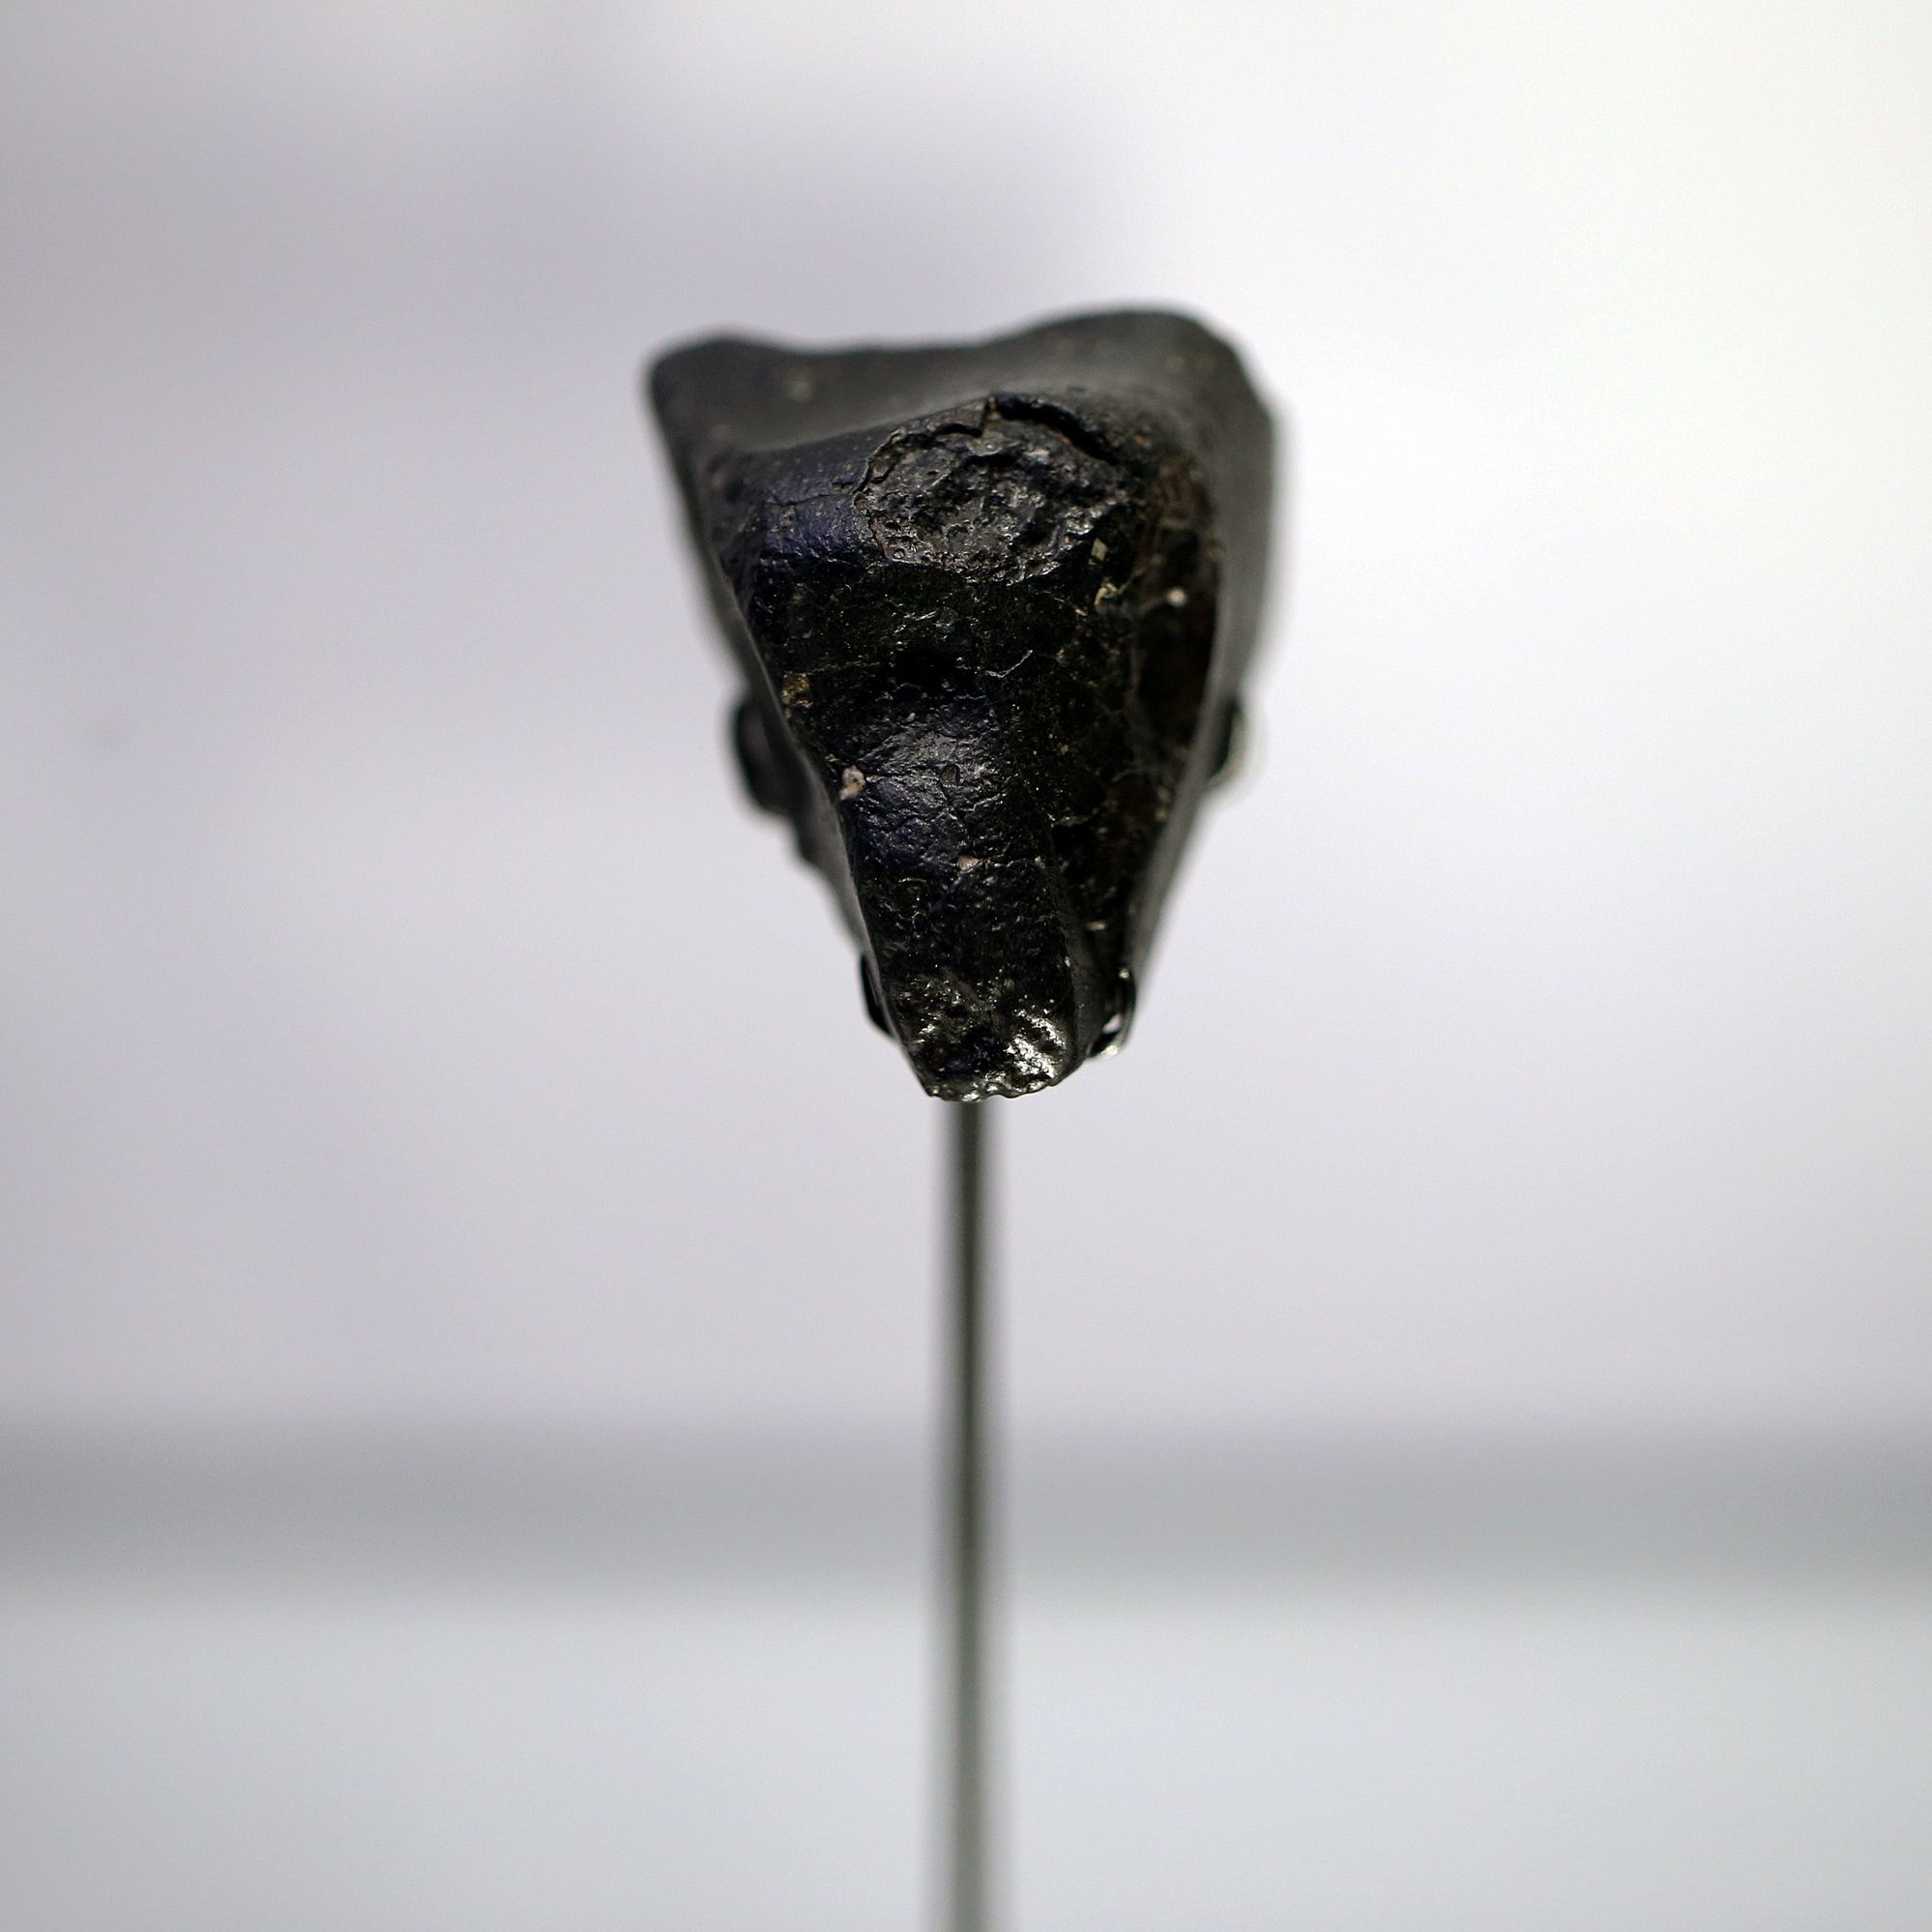 This is the True Origin of the Mars Meteorite 'Black Beauty'.